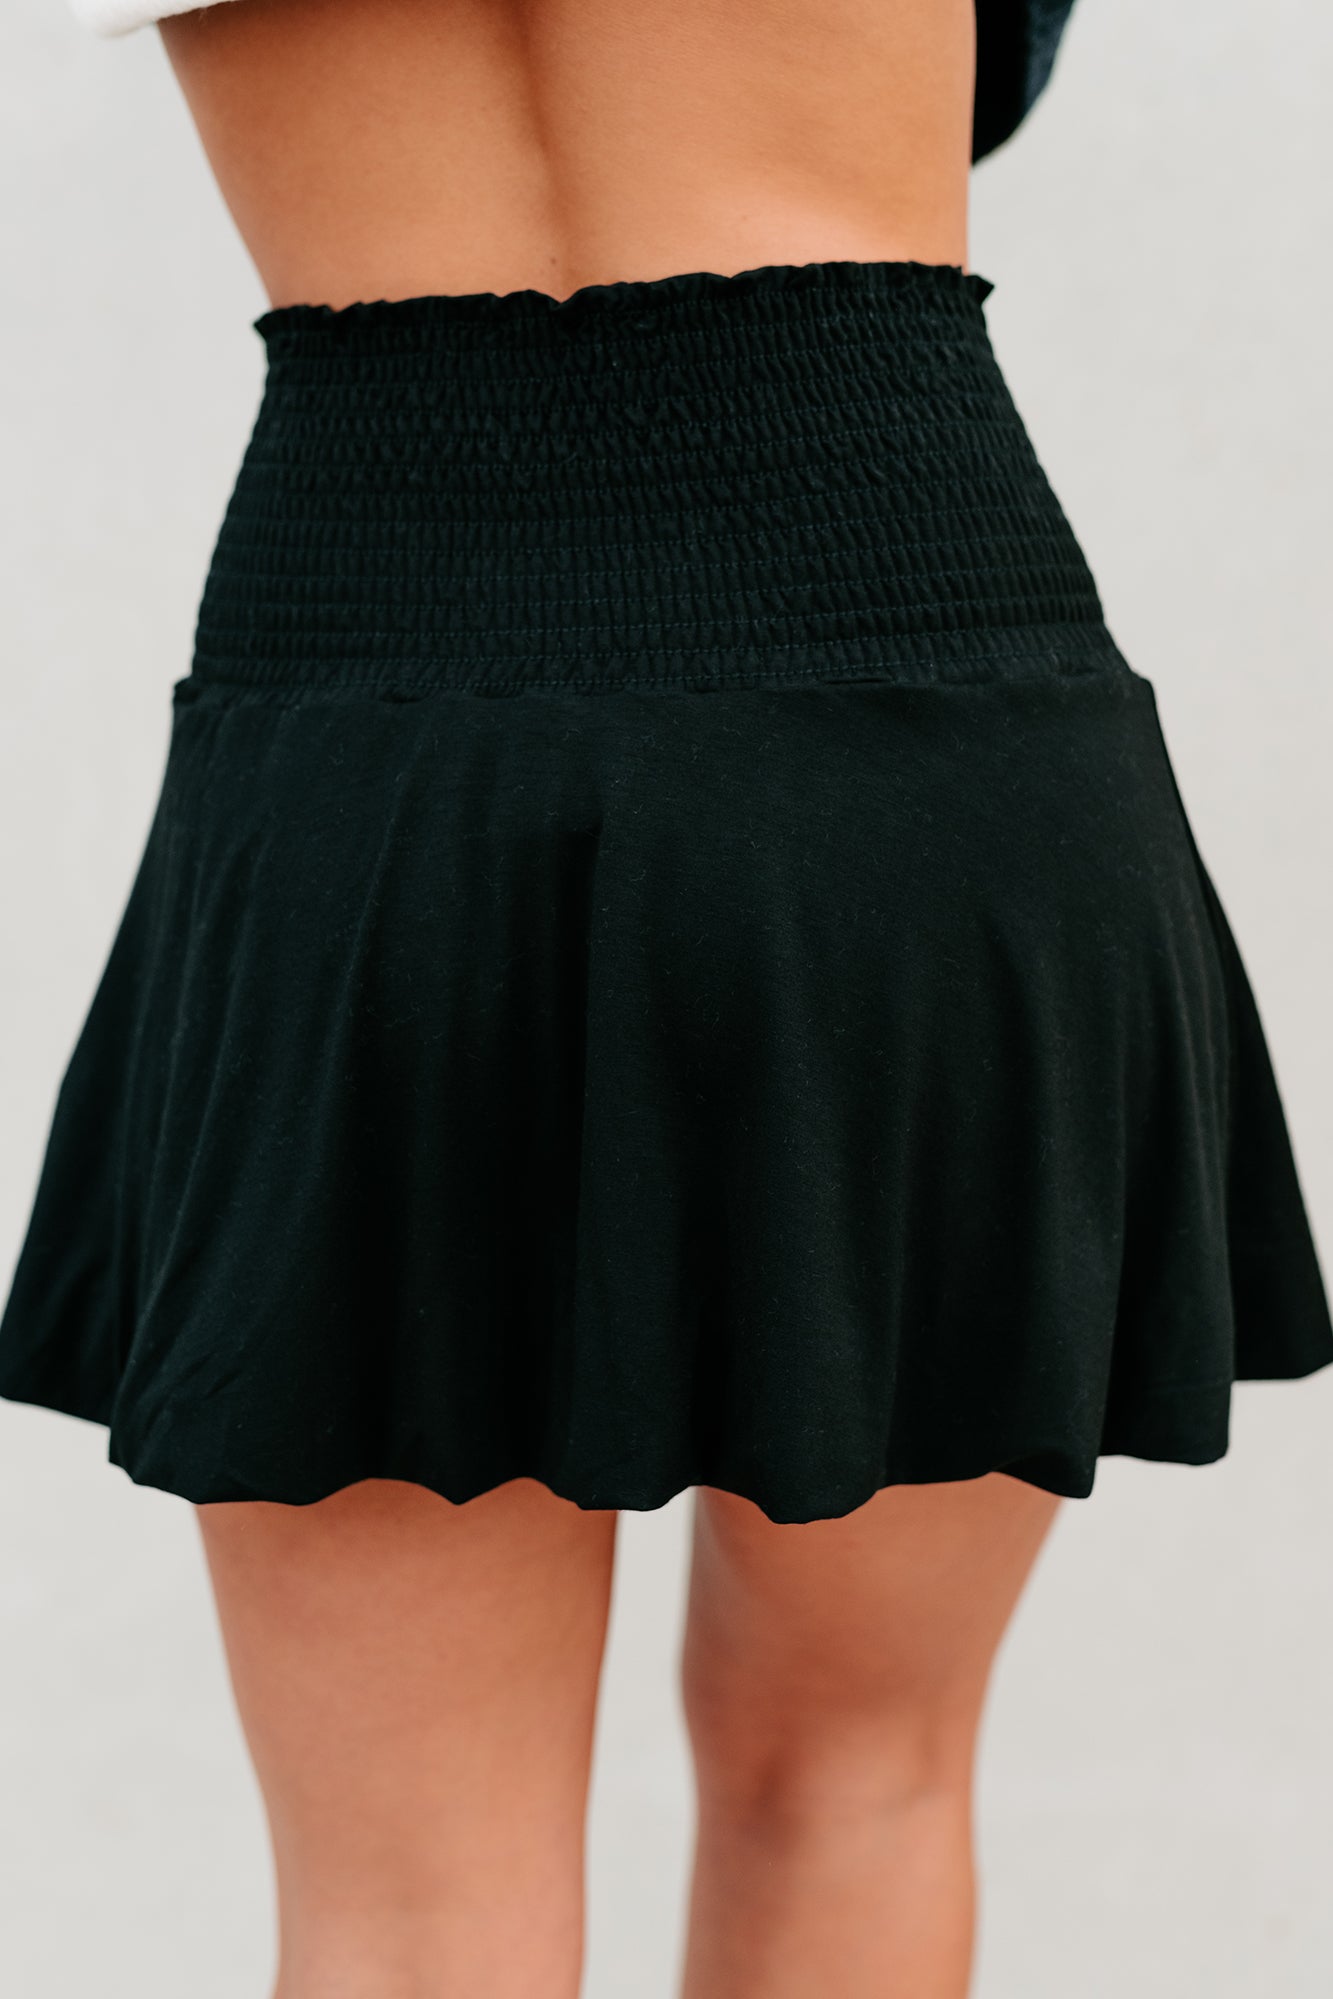 Dial It Back Smocked Waist Bubble Hem Mini Skirt (Black) - NanaMacs